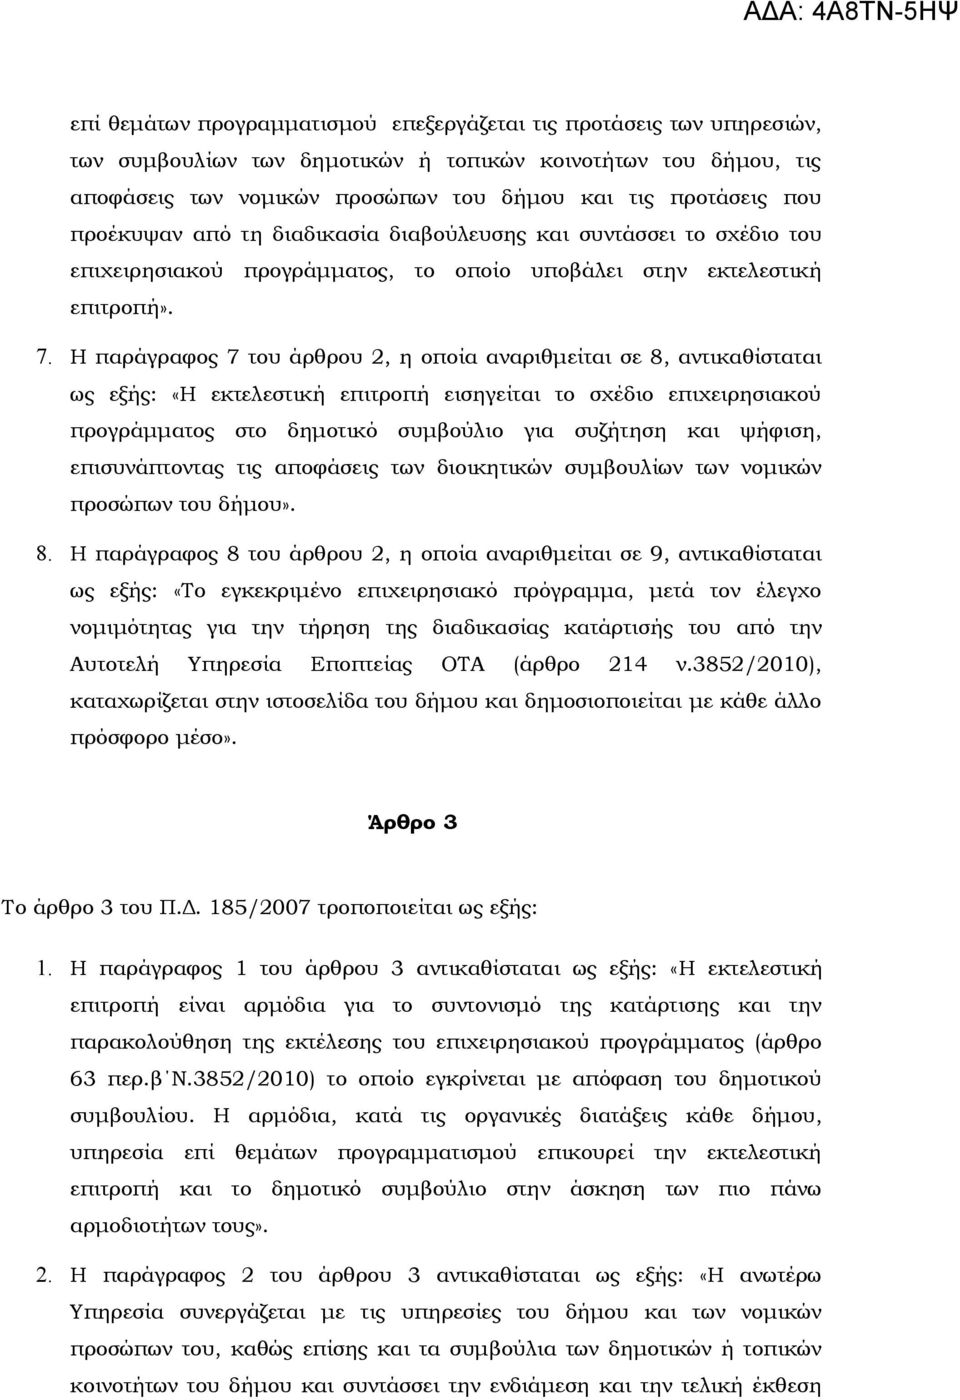 Η παράγραφος 7 του άρθρου 2, η οποία αναριθμείται σε 8, αντικαθίσταται ως εξής: «Η εκτελεστική επιτροπή εισηγείται το σχέδιο επιχειρησιακού προγράμματος στο δημοτικό συμβούλιο για συζήτηση και